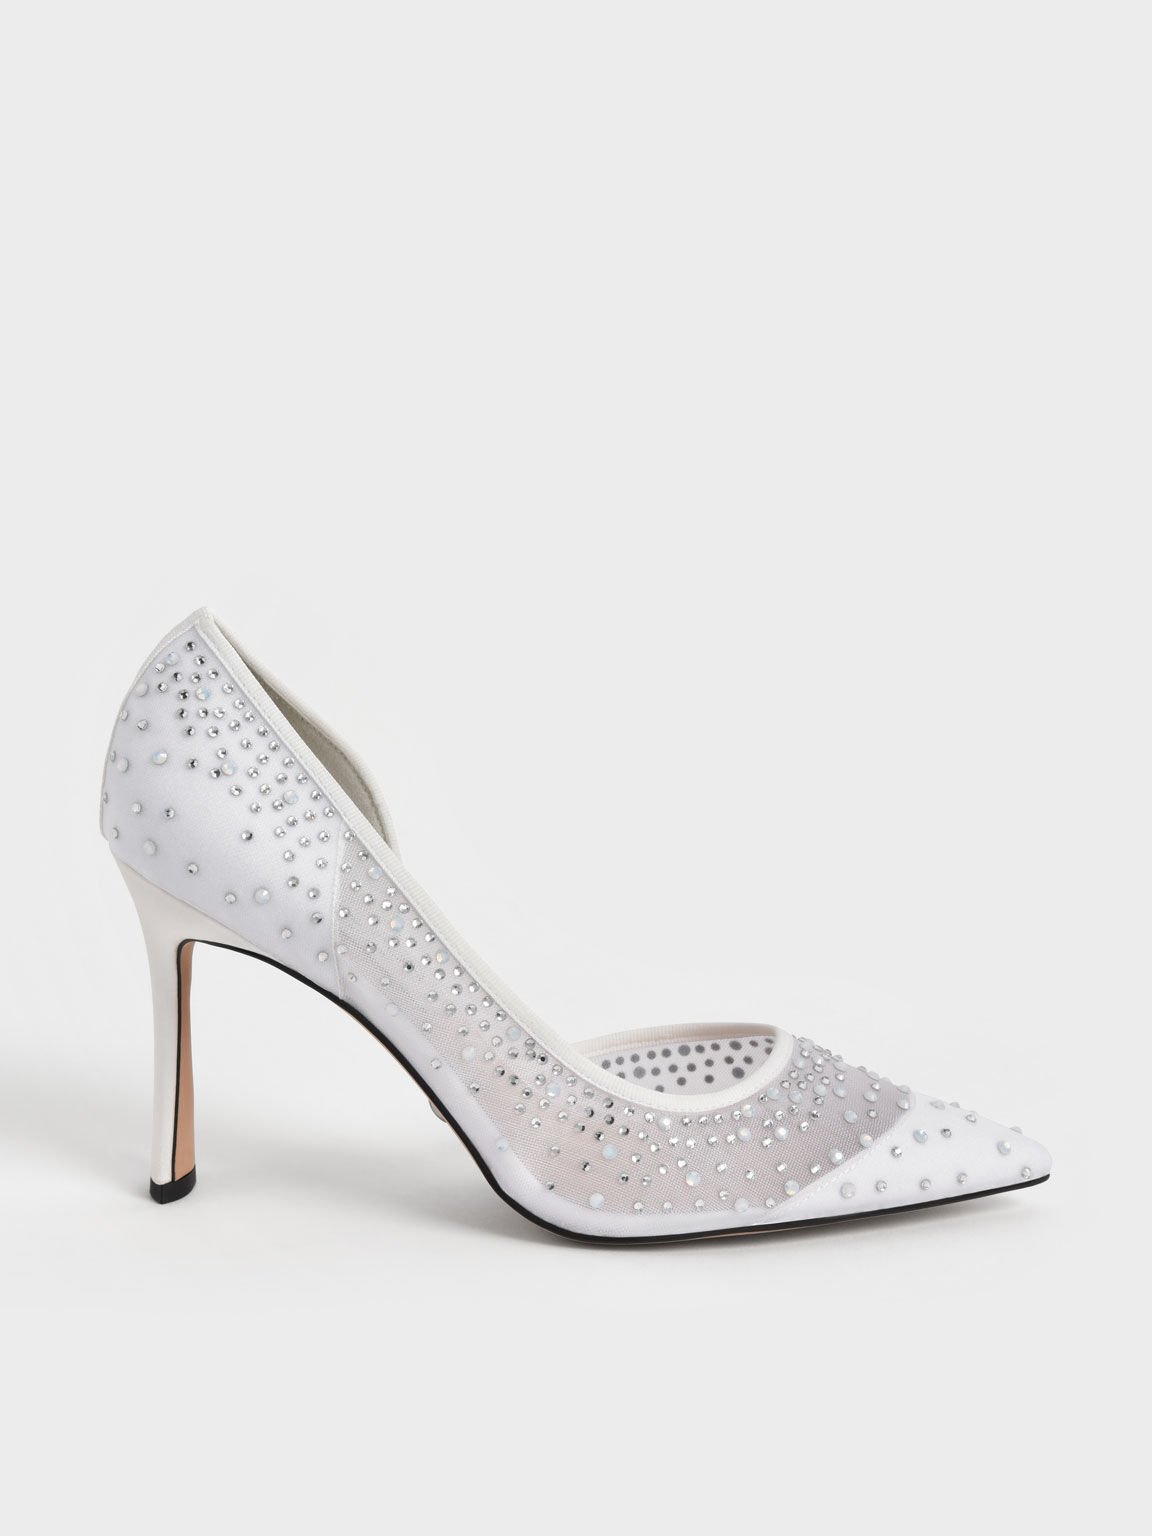 Zapatos de tacón medio D'Orsay adornados con malla Blythe, Blanco, hi-res